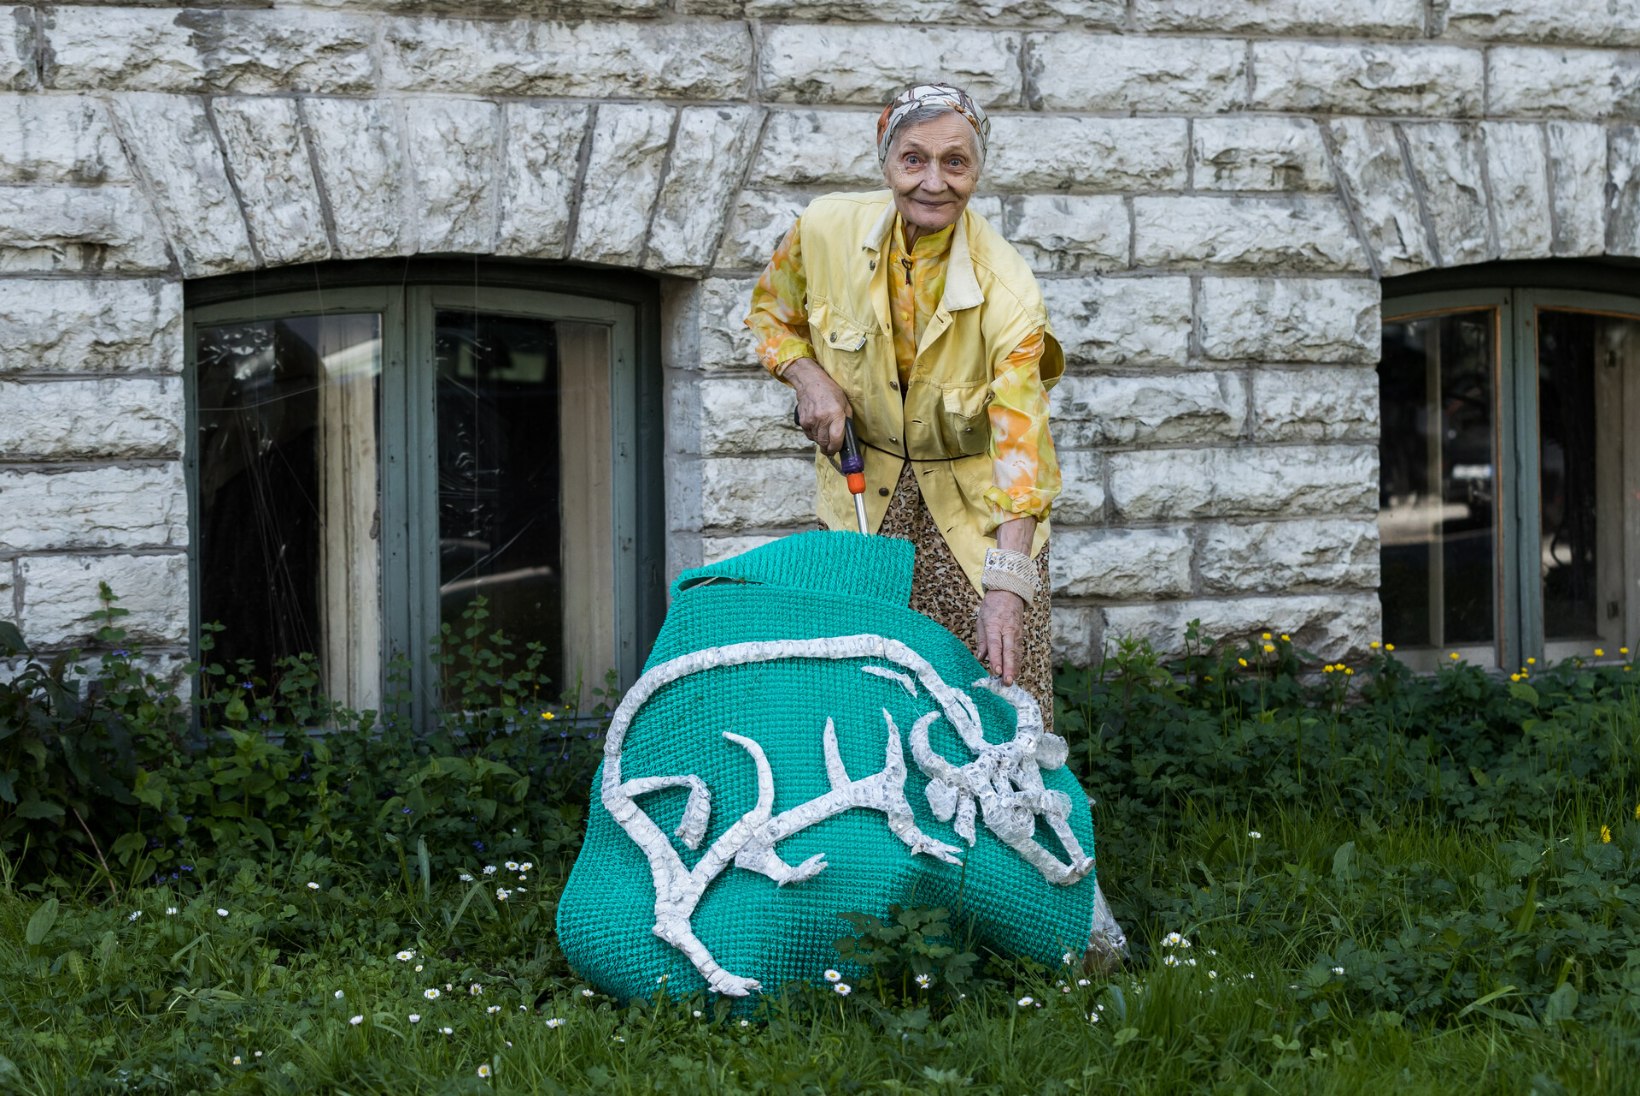 80aastaselt tänavakunstnikuks! Skulptor Johanna Ranne meisterdab igal aastal Kadrioru kortermaja ette uue taiese